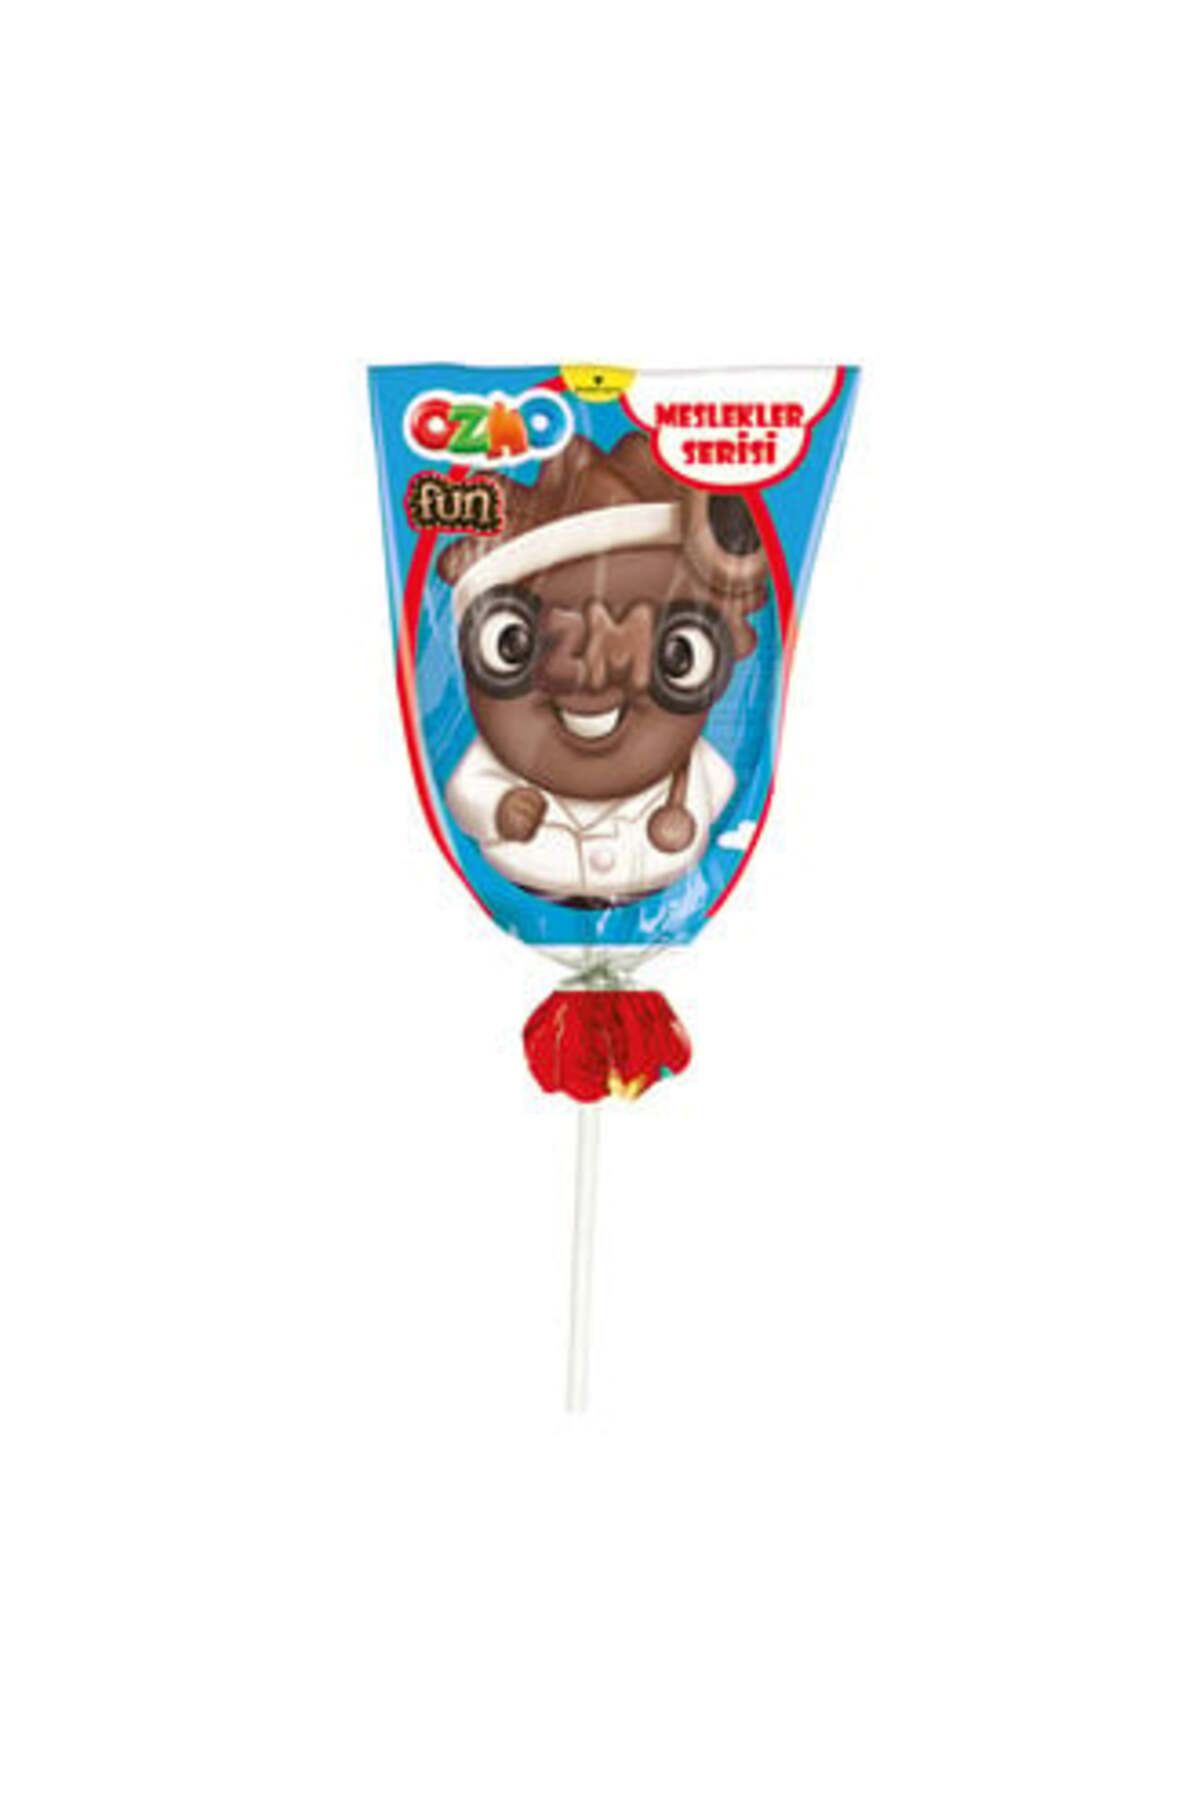 Ozmo Fun Meslekler Serisi Figürlü Çikolatalar 23 G ( 2 ADET )